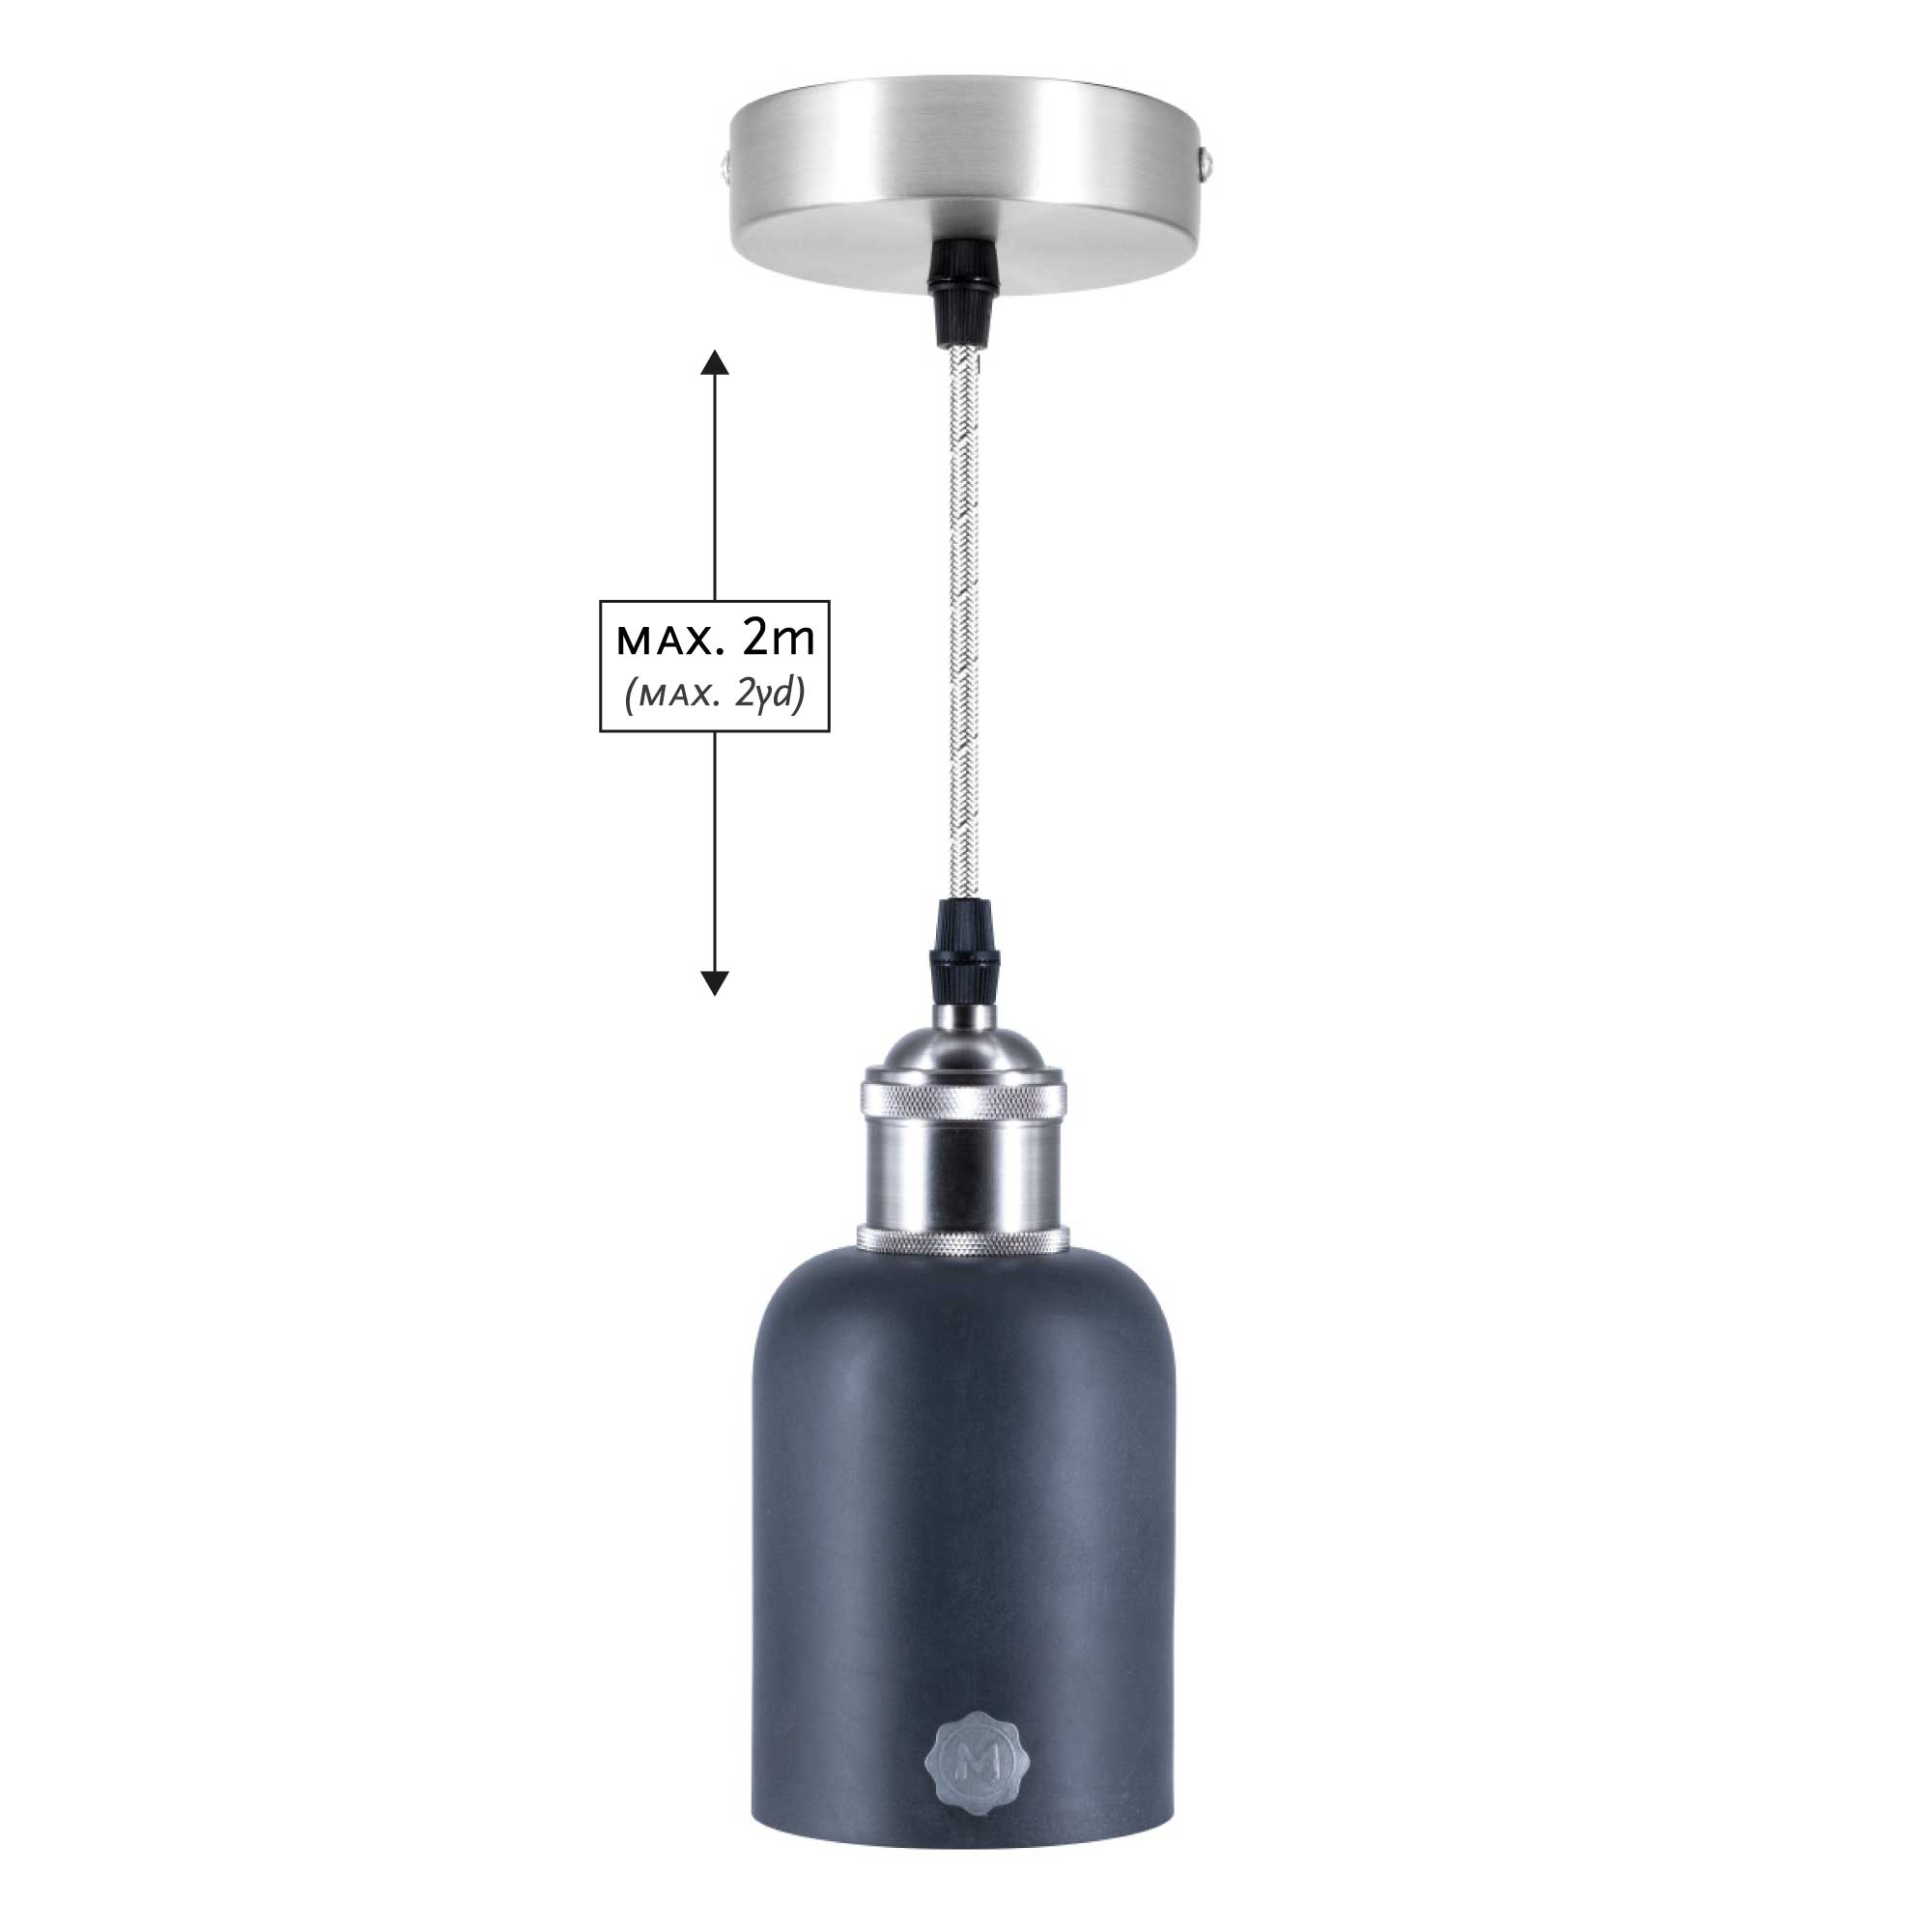 Pendulum lamp "Tube", slate colored